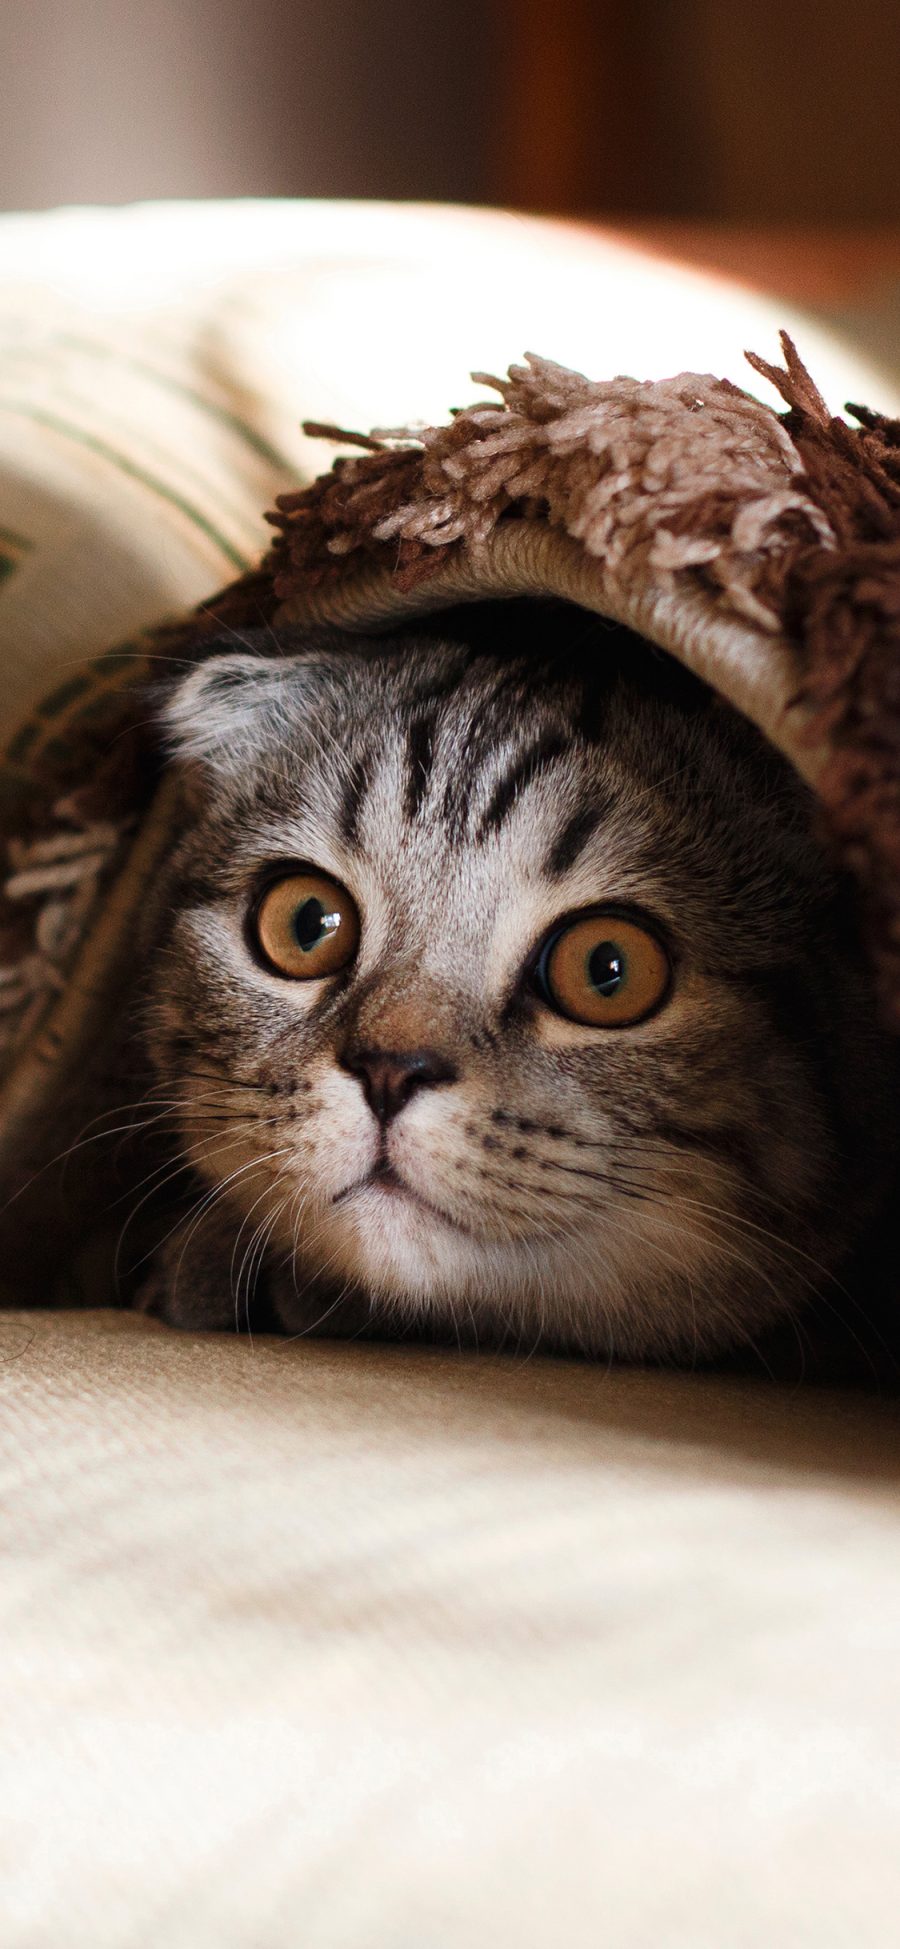 [2436×1125]猫咪 动物 躲藏 宠物 呆萌 苹果手机壁纸图片